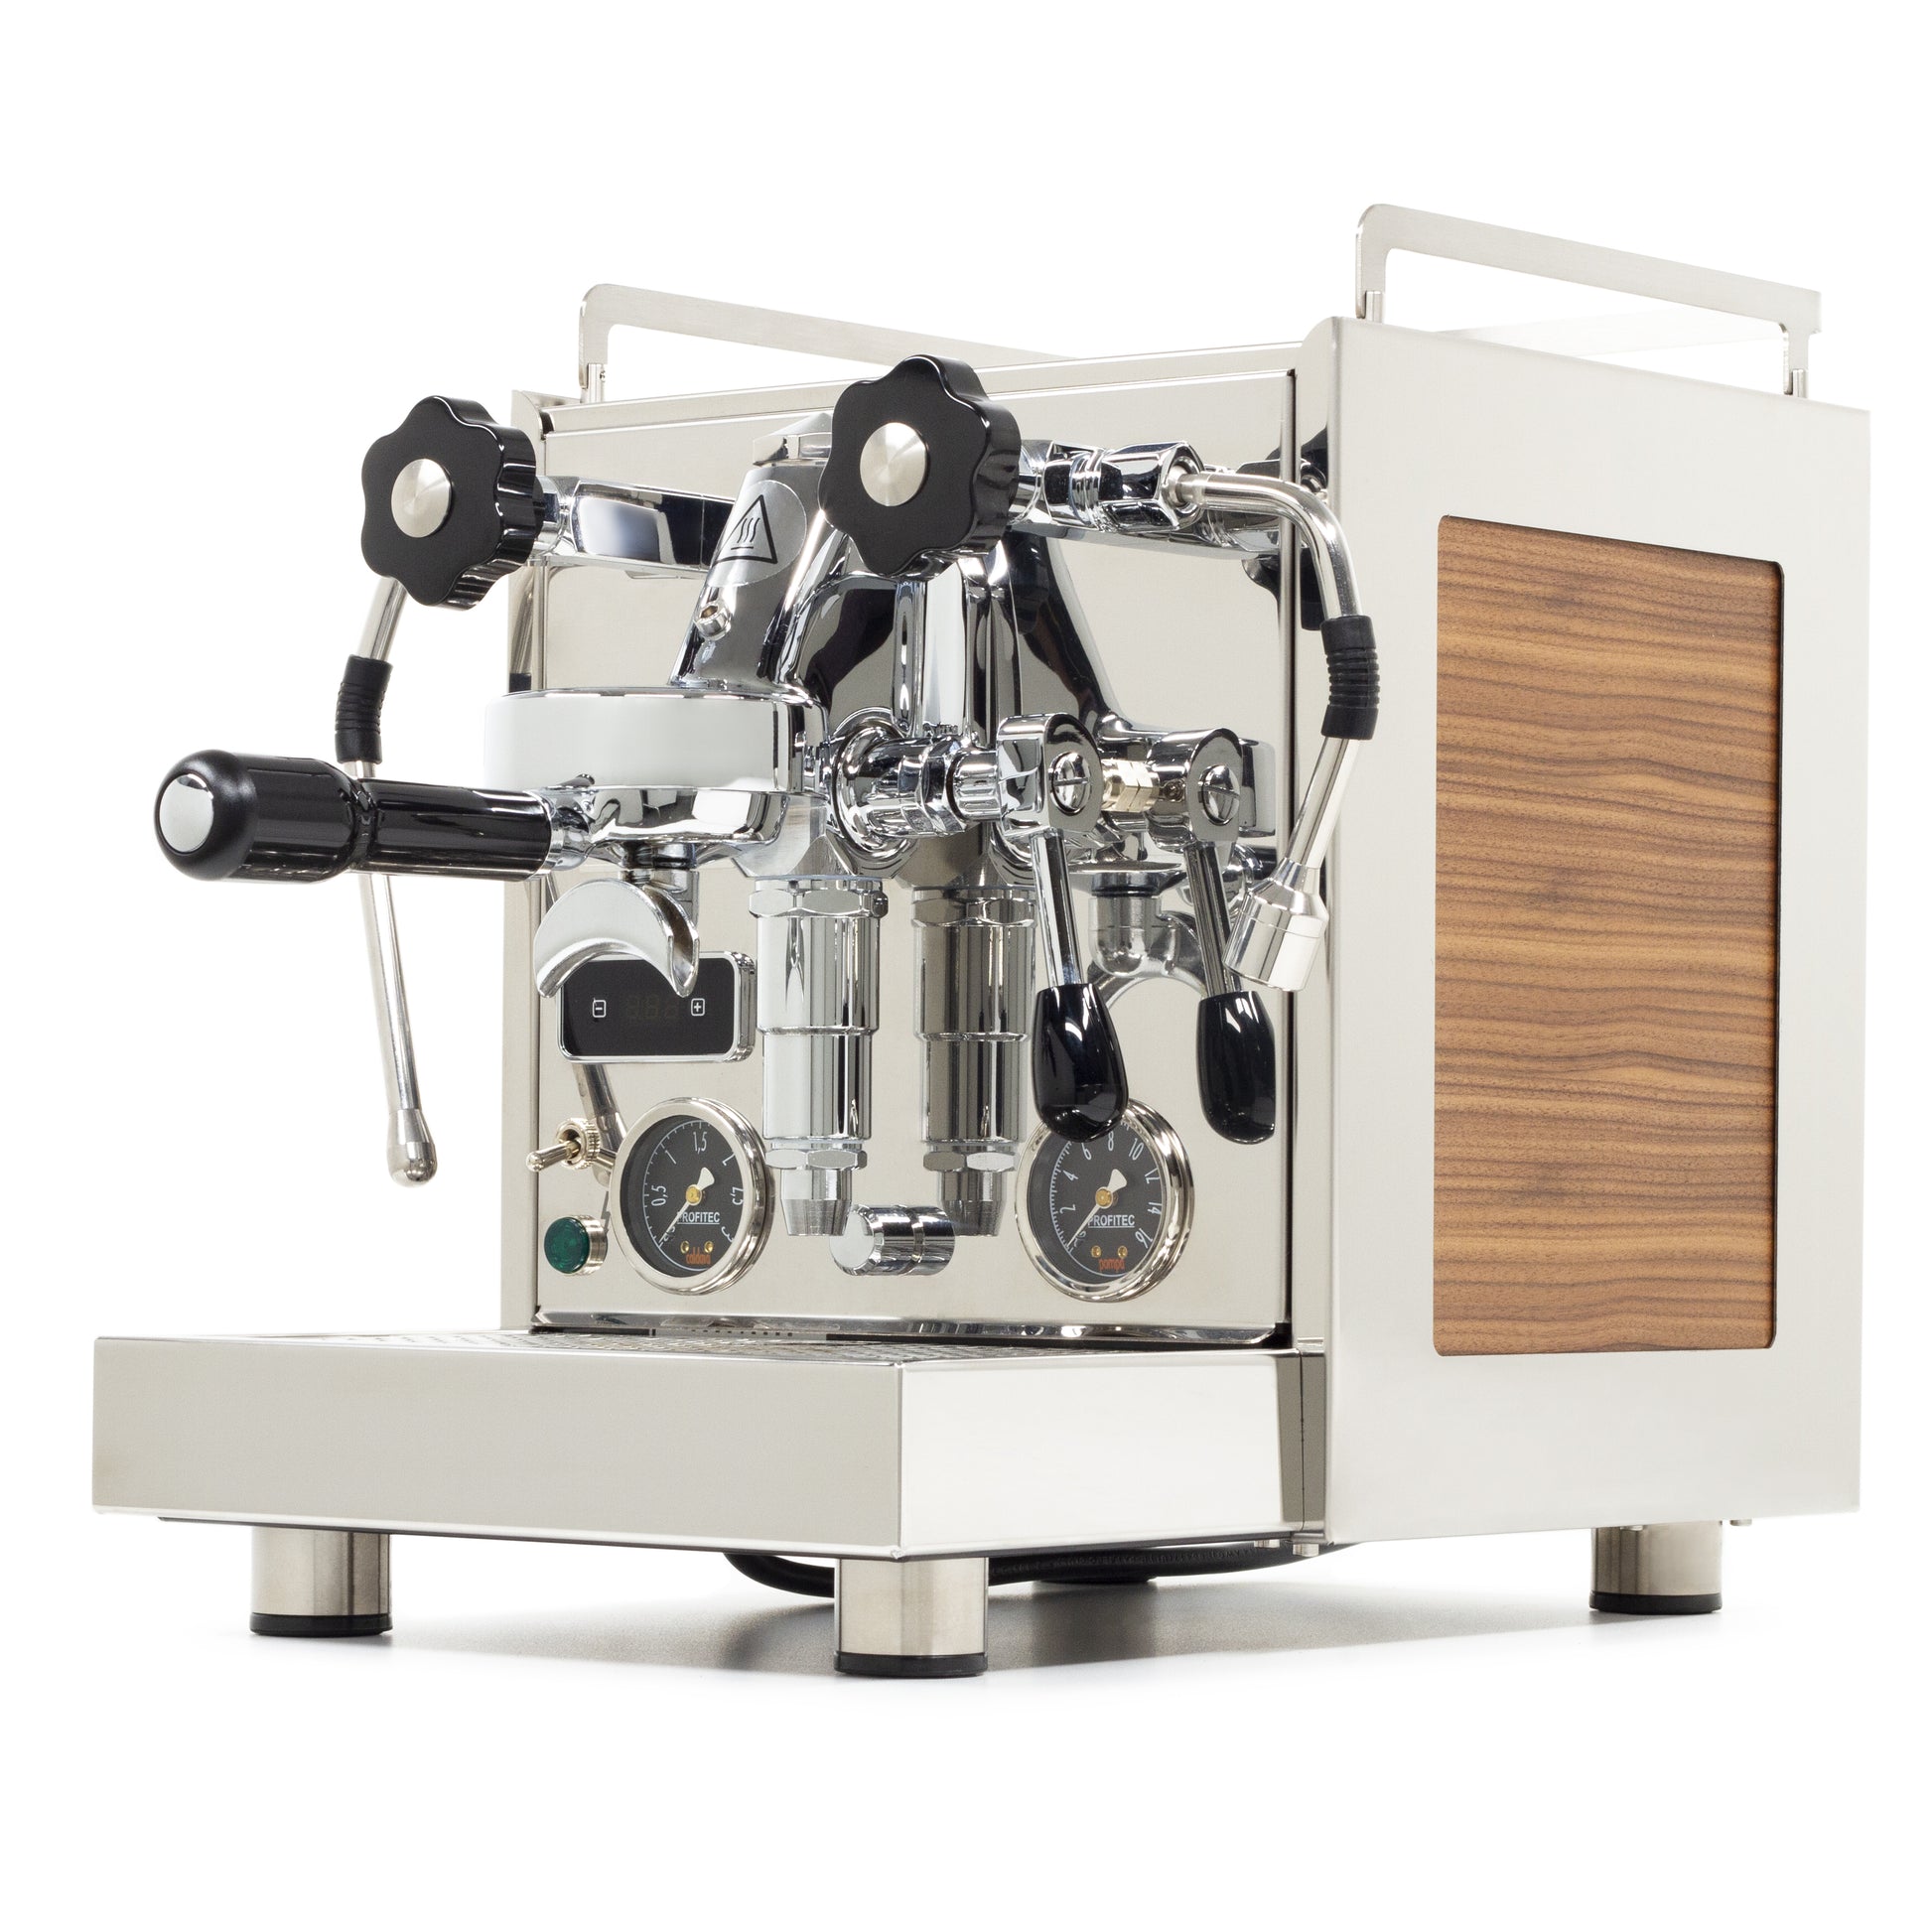 6 best affordable espresso machines under $600